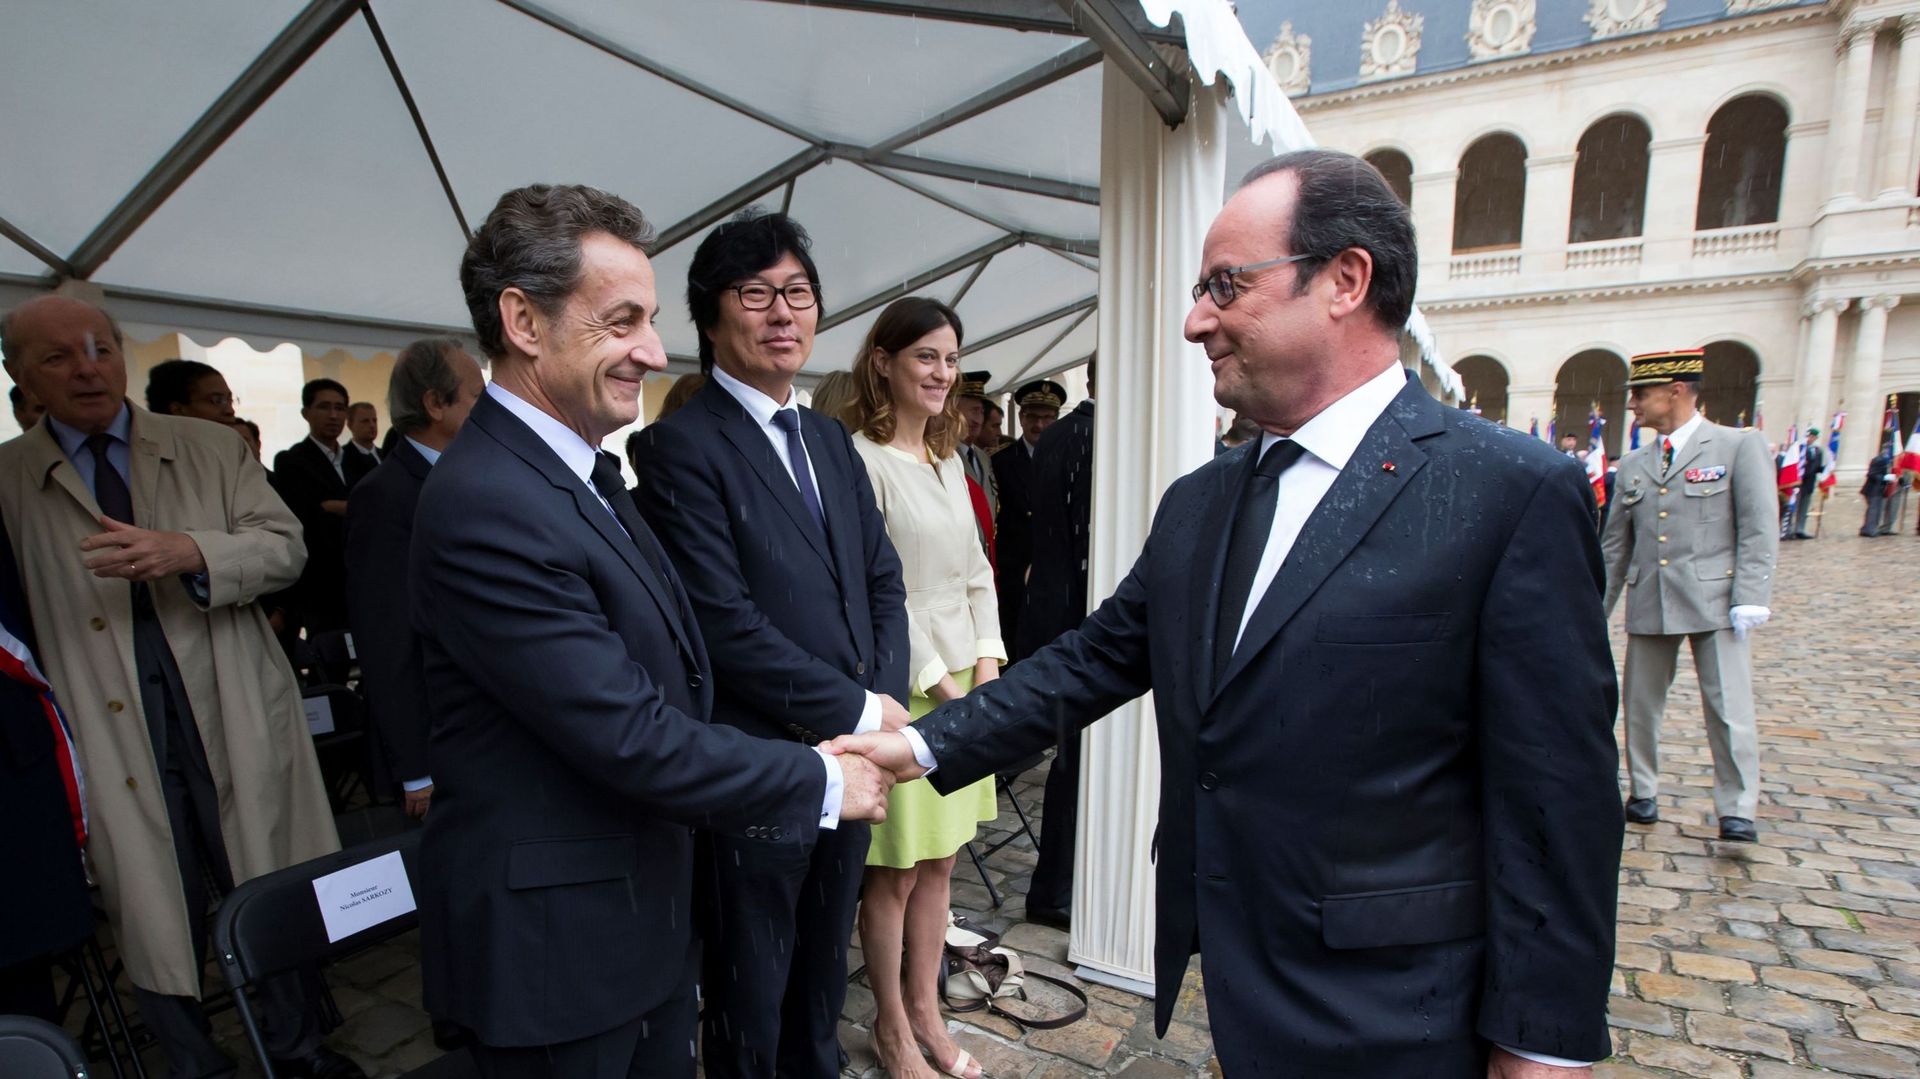 François Hollande et Nicolas Sarkozy se serrent la main lors d'une cérémonie aux Invalides, à Paris, le 25 septembre 2016.